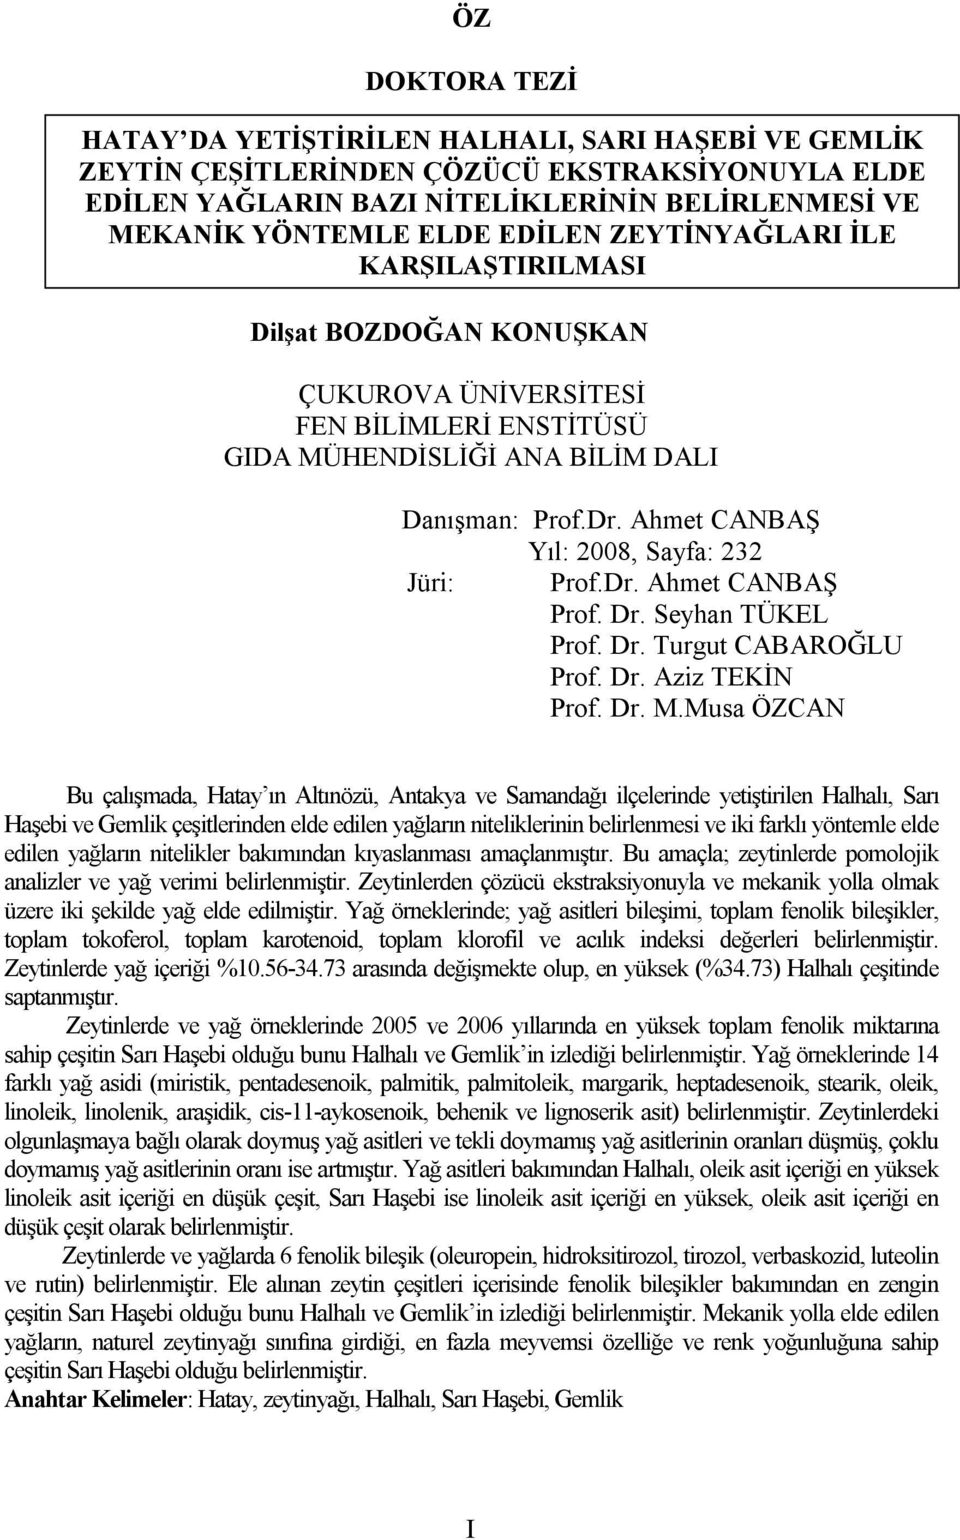 Ahmet CANBAŞ Yıl: 2008, Sayfa: 232 Jüri: Prof.Dr. Ahmet CANBAŞ Prof. Dr. Seyhan TÜKEL Prof. Dr. Turgut CABAROĞLU Prof. Dr. Aziz TEKİN Prof. Dr. M.